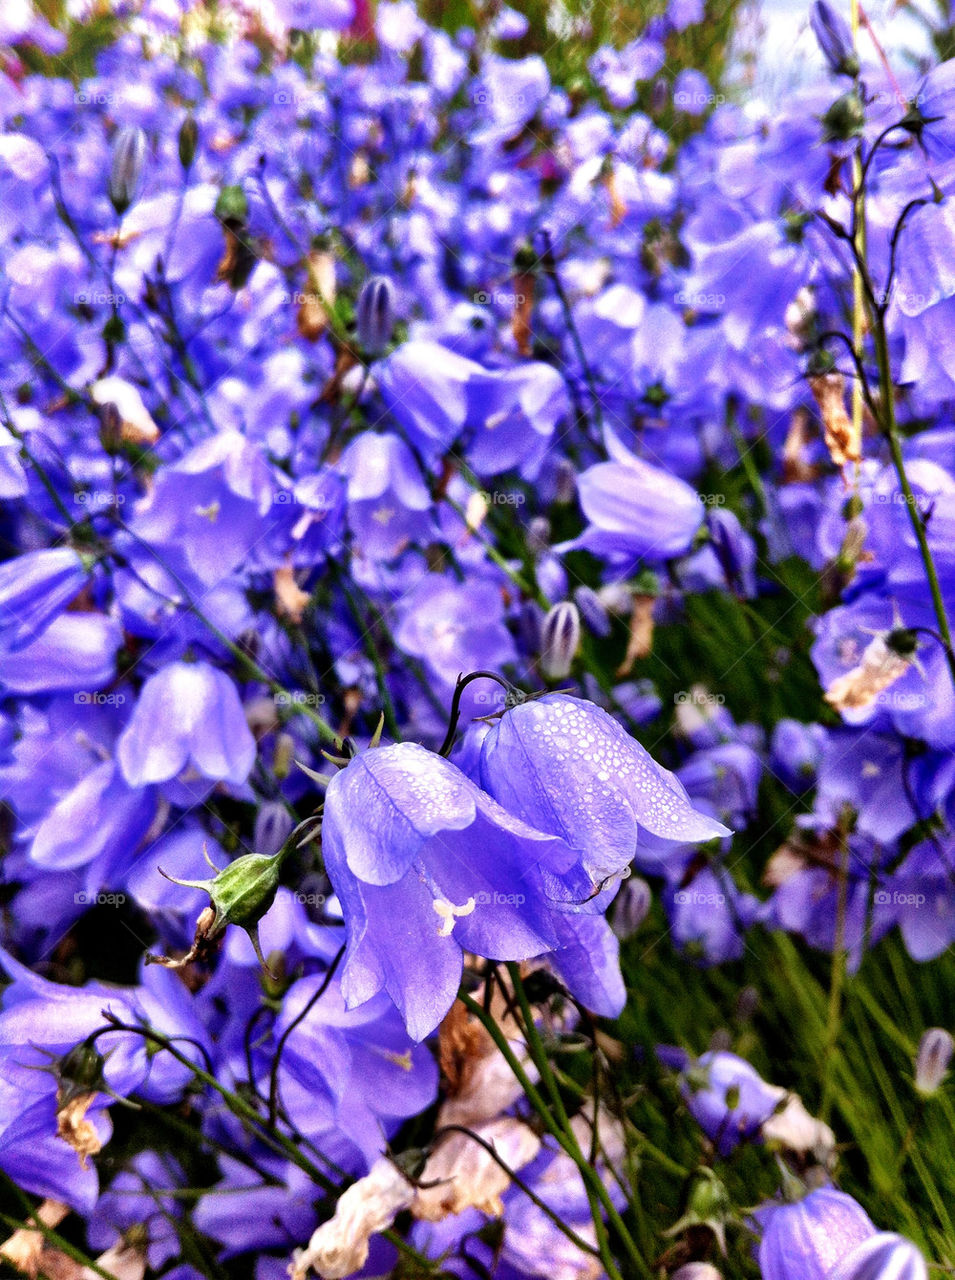 Field of purple flowers